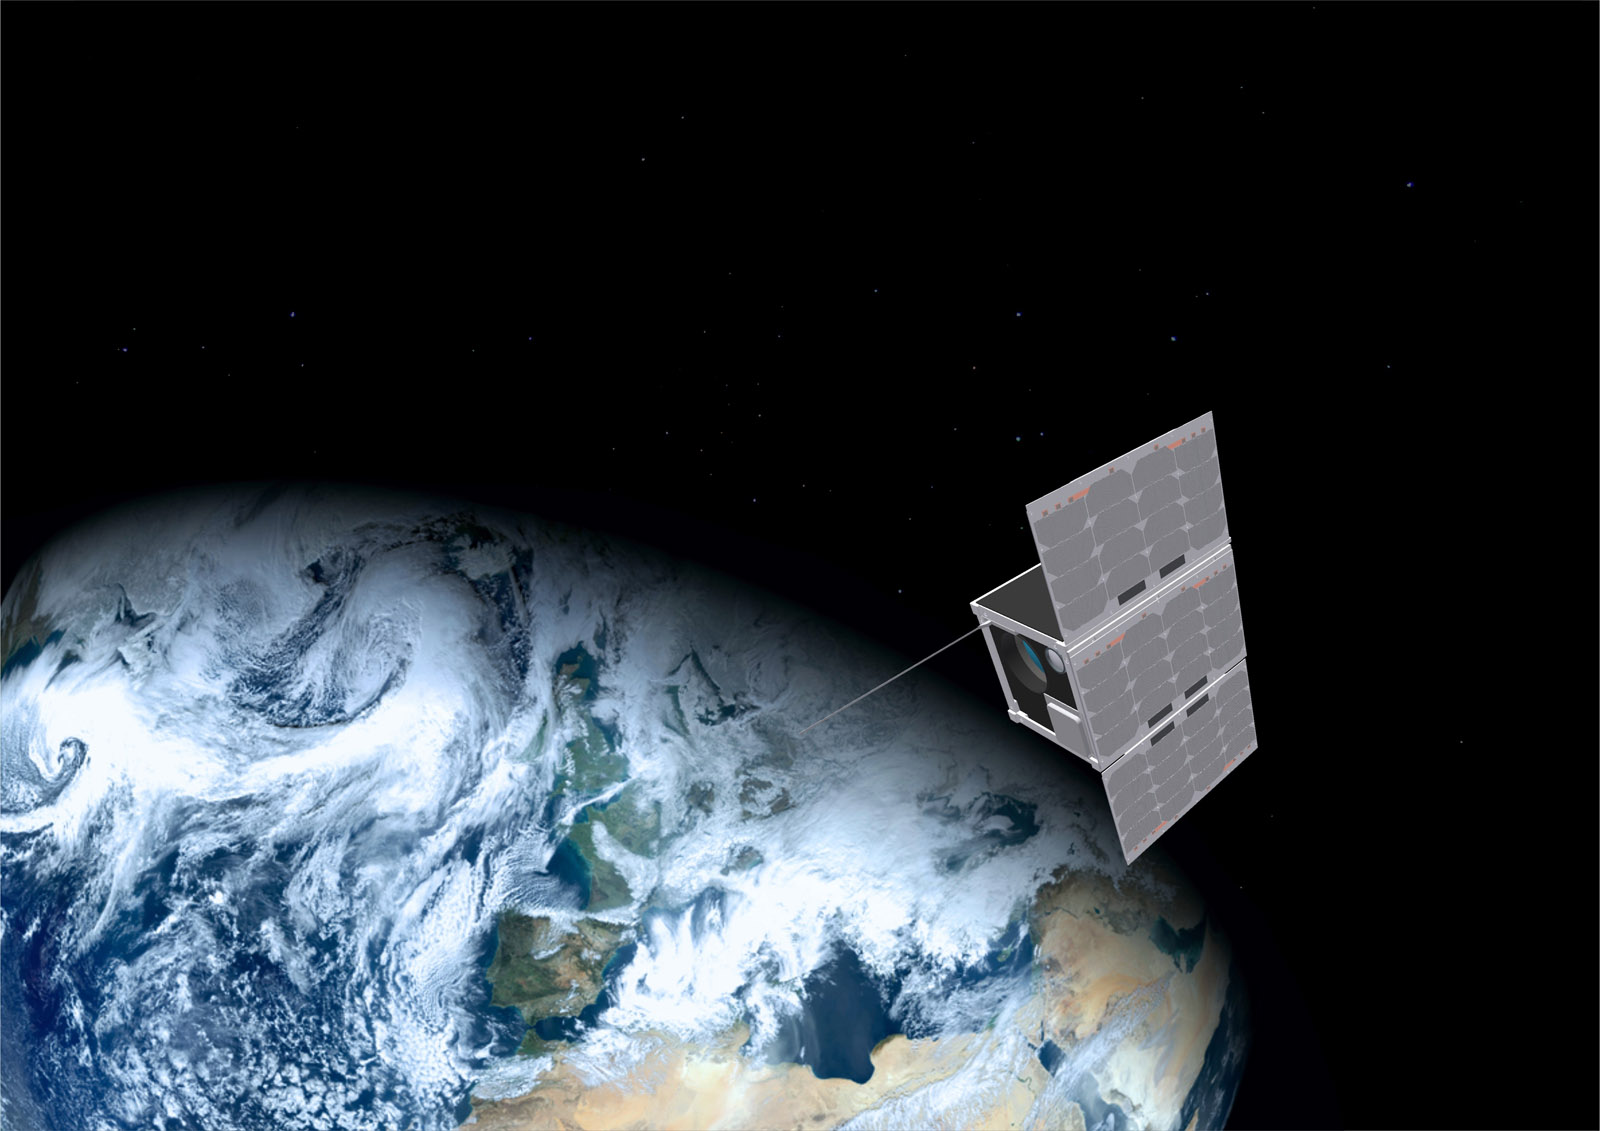 Der Kleinsatellit ERNST ist etwa so groß wie eine halbe Kiste Bier und transportiert eine Infrarotkamera zur Erdbeobachtung.